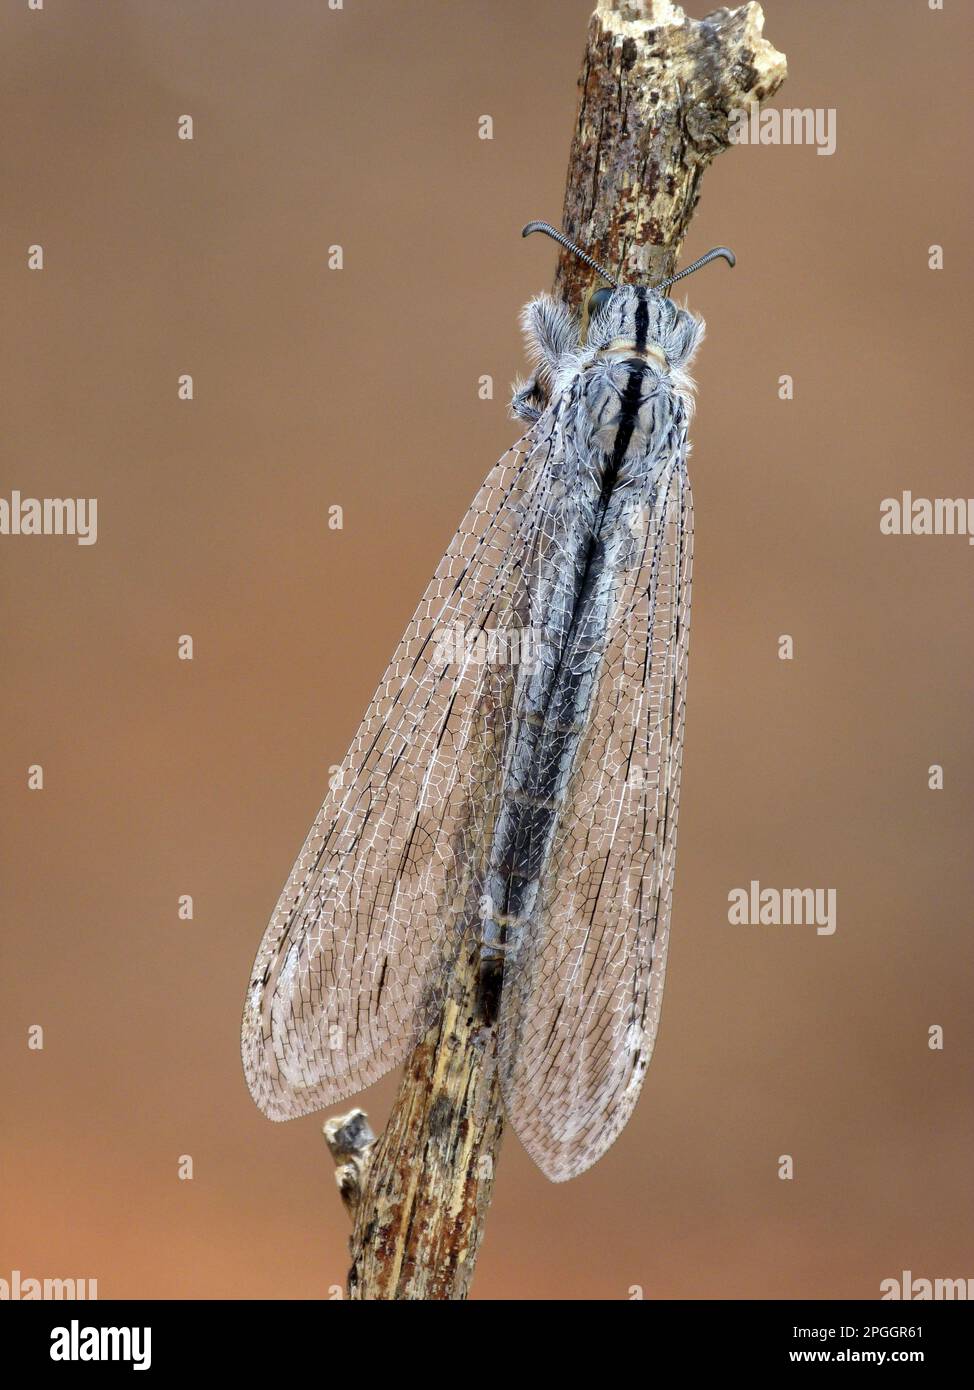 Antlion (Myrmeleontidae), Other animals, Insects, Animals, Antlion (Heoclisis fundata) adult, resting on twig, Western Australia, Australia Stock Photo